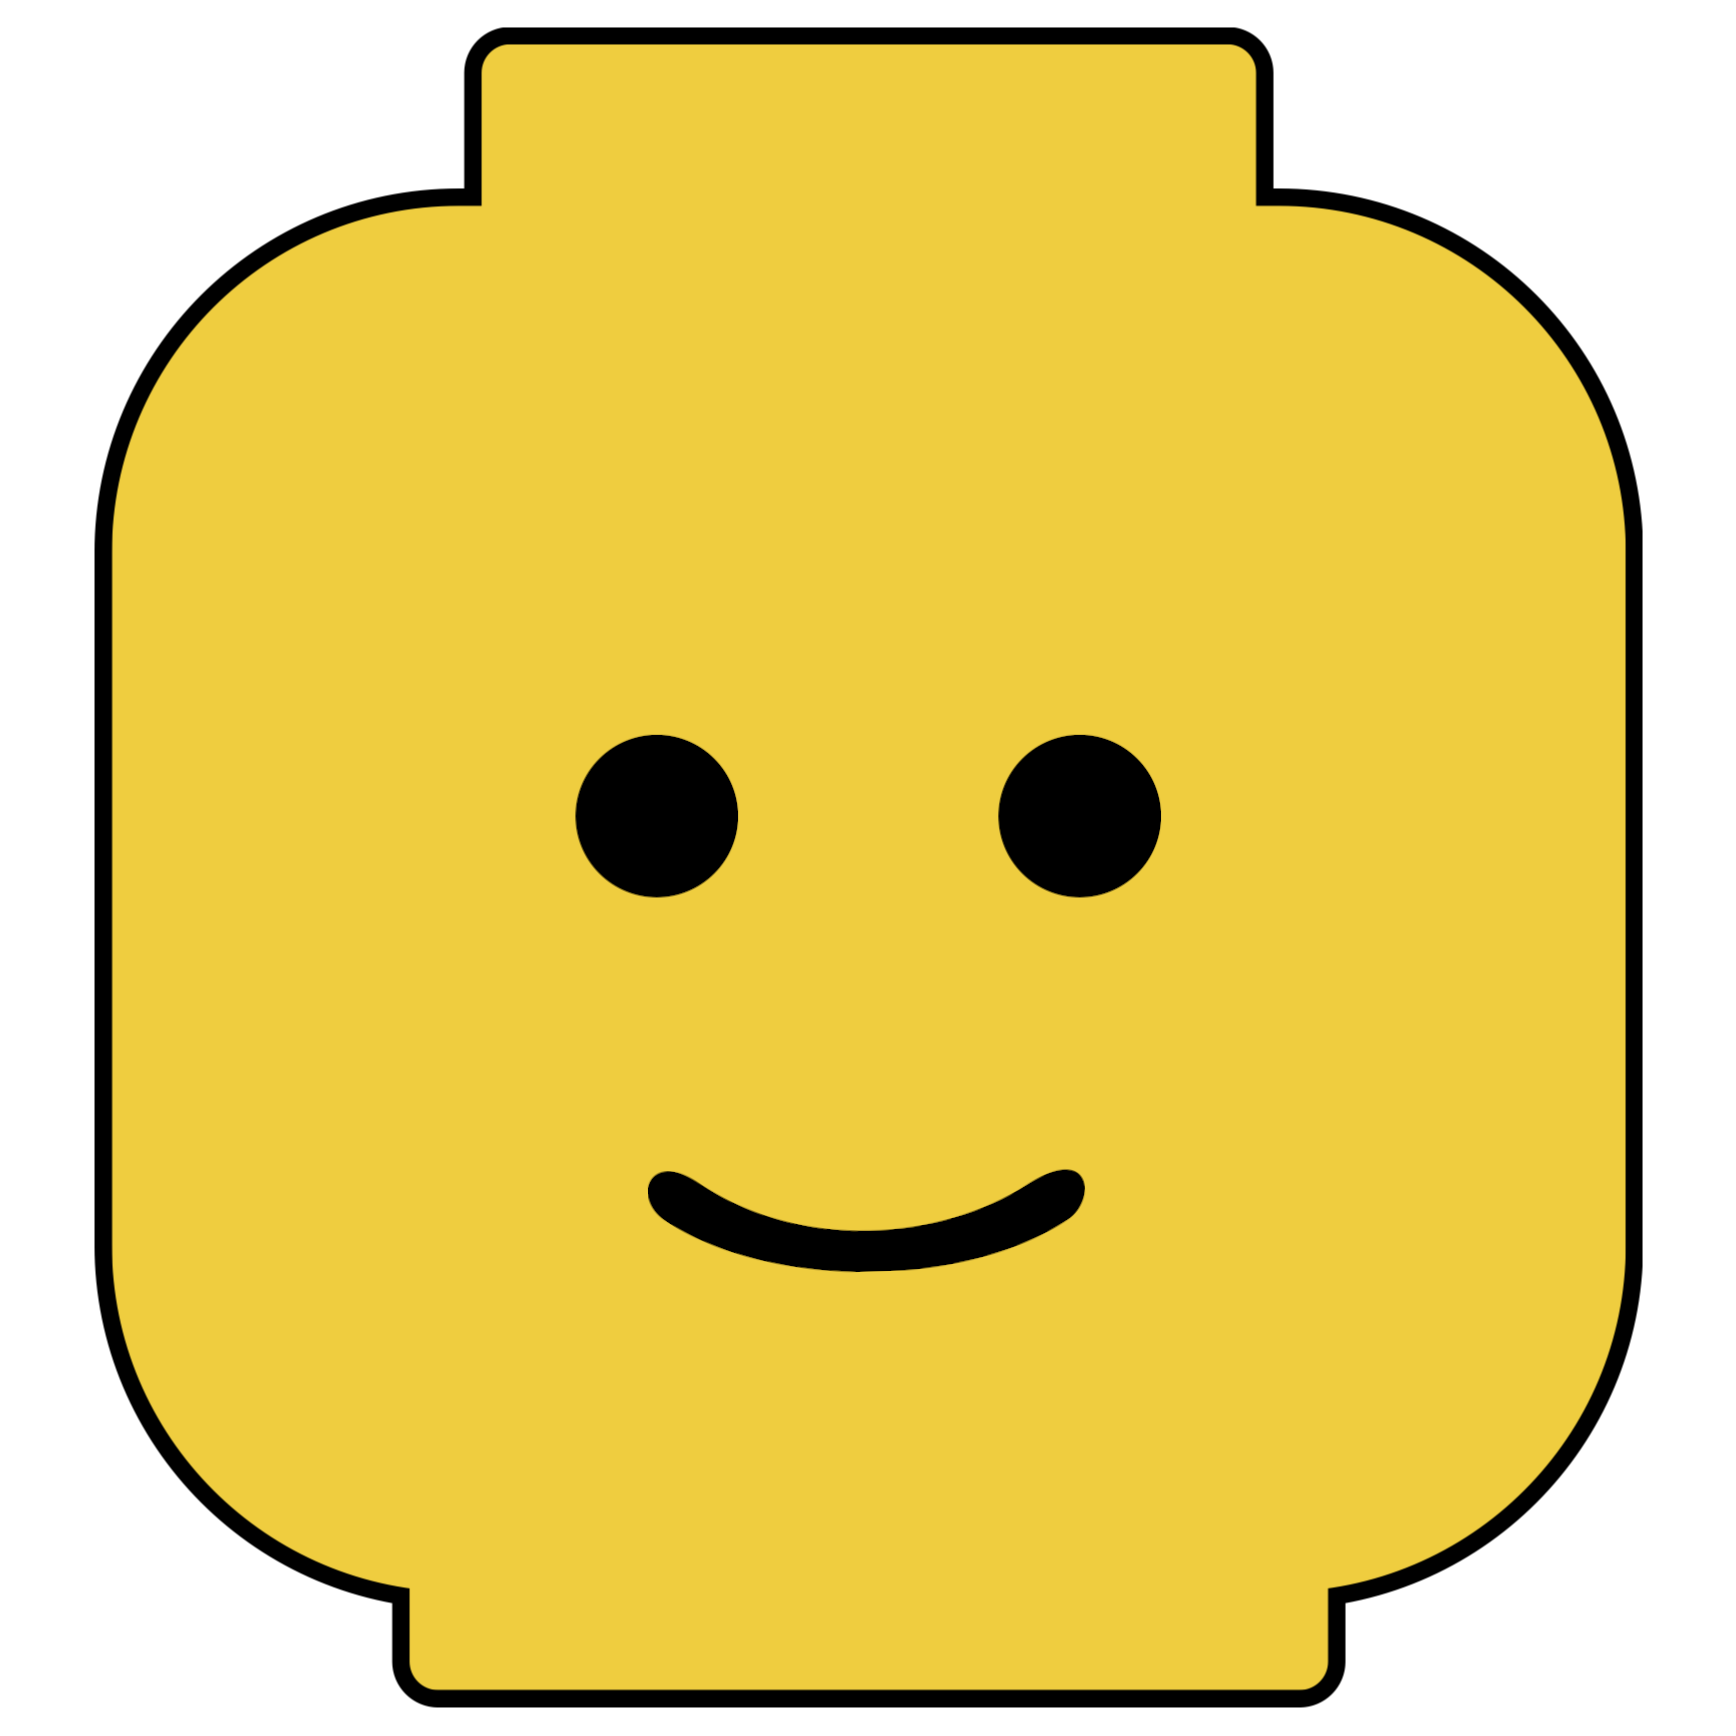 Lego Head 1 